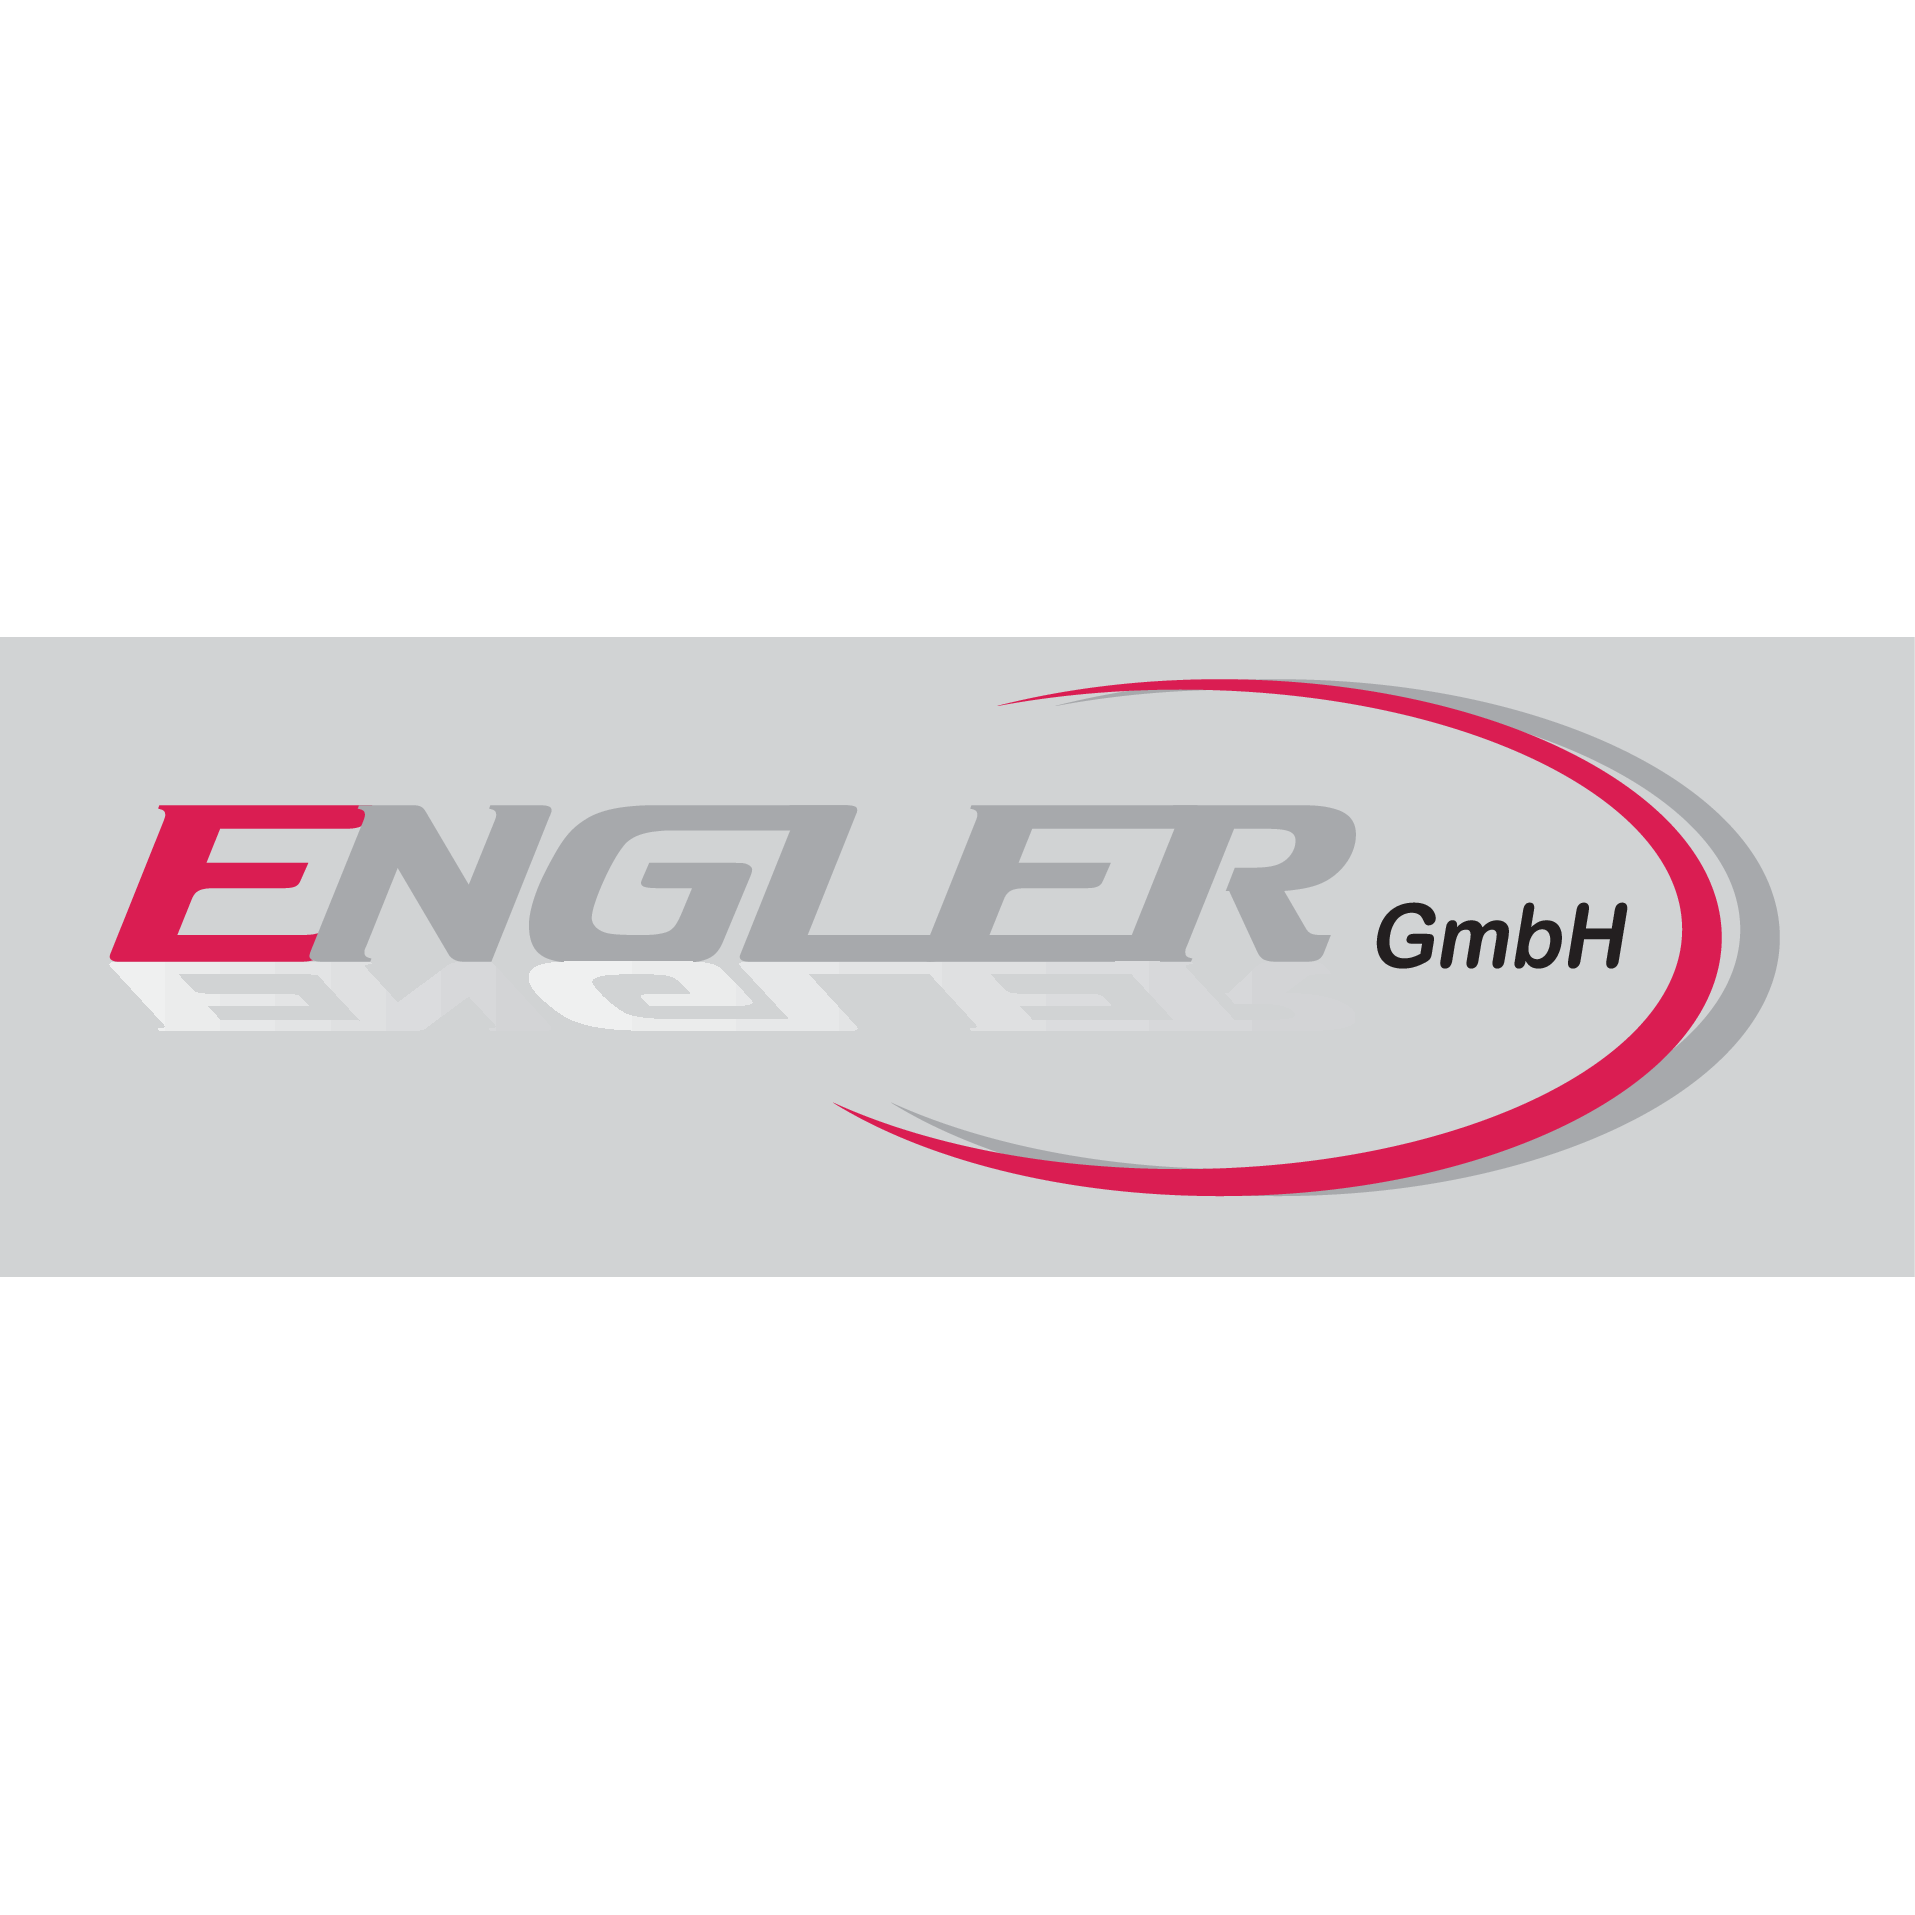 Bild zu Engler GmbH in Nürnberg